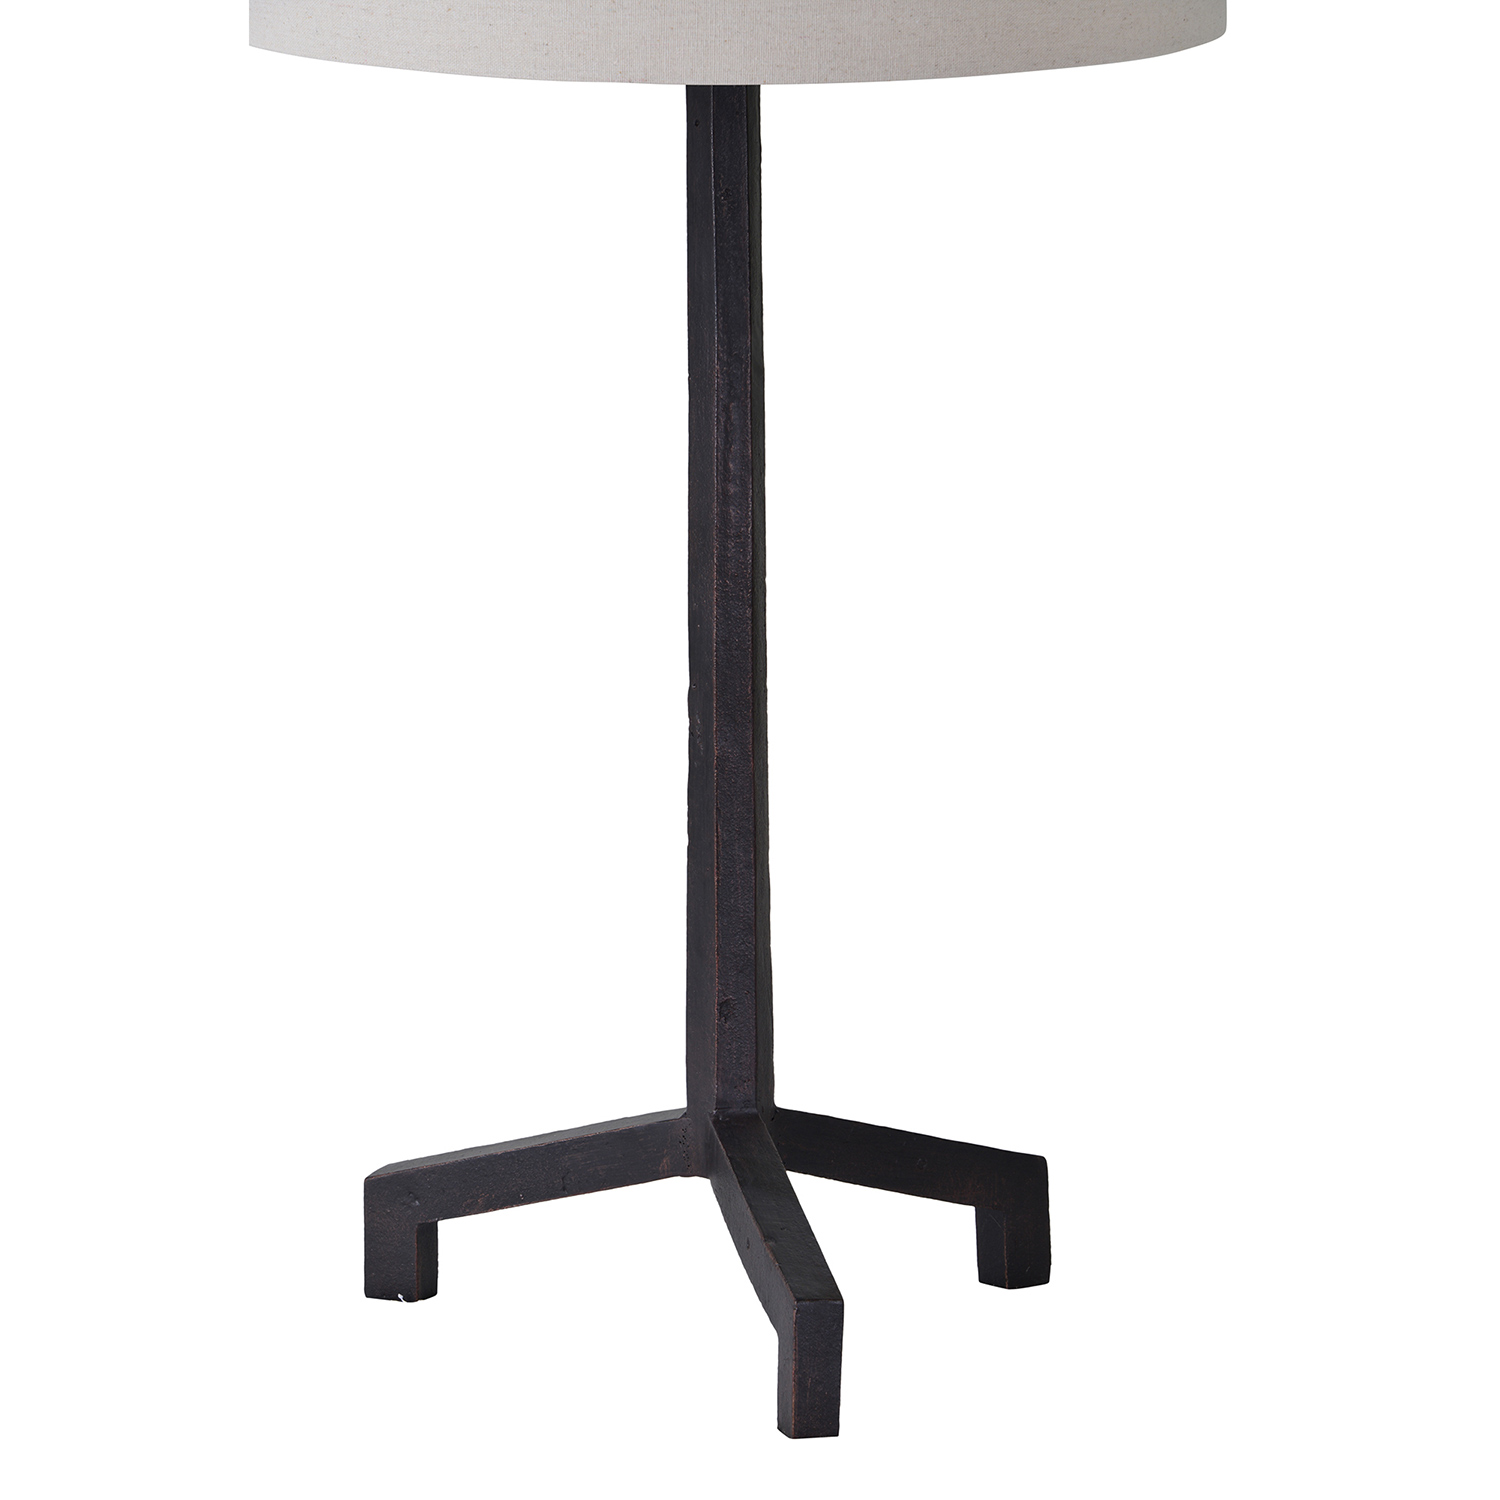 Ren-Wil Slayton Table Lamp - Black